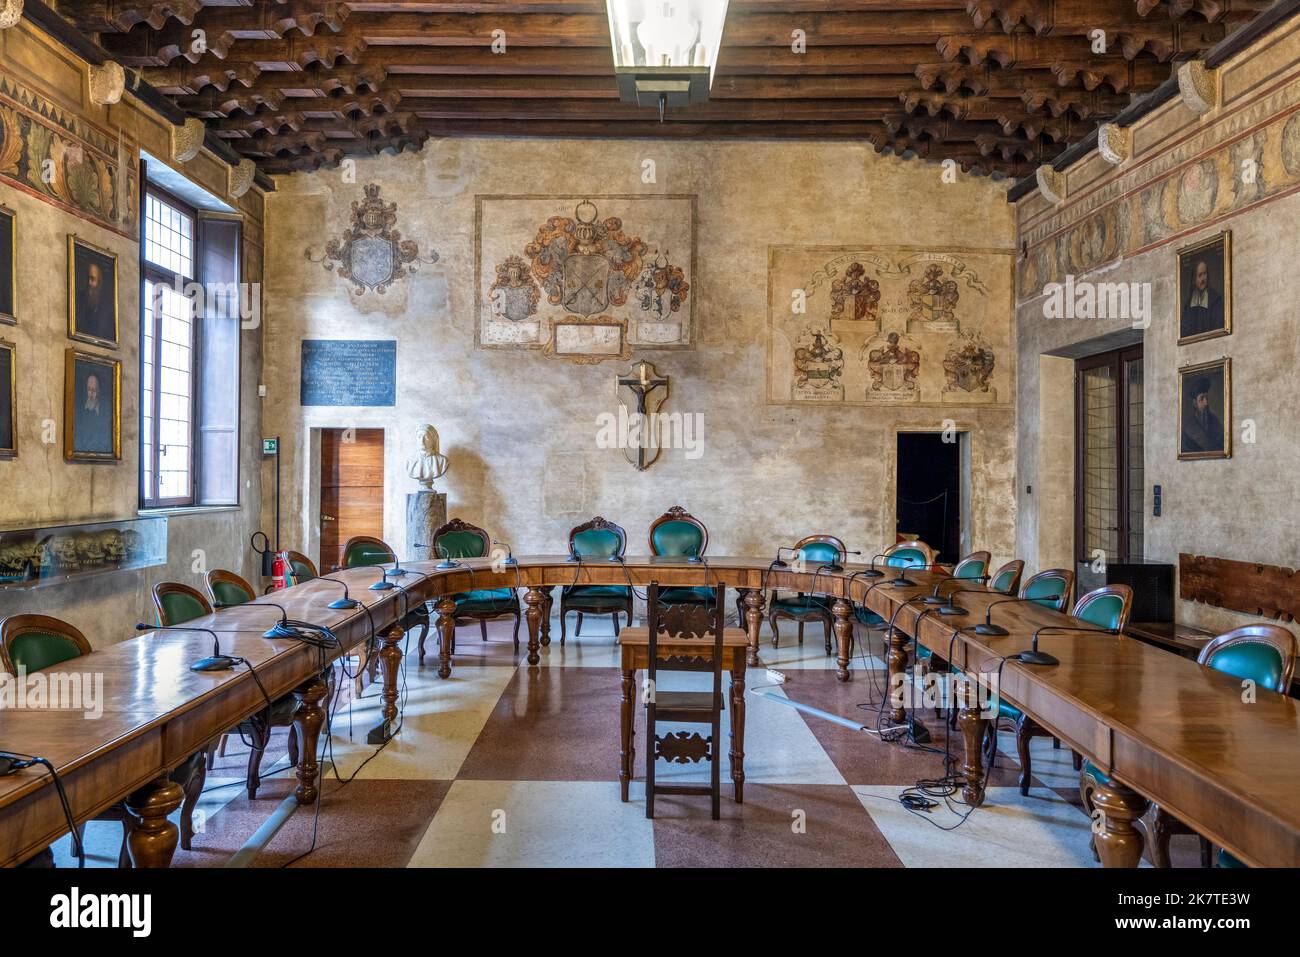 Salle de remise des diplômes (Sala Lauree) à l'intérieur du Palazzo del Bo, siège historique de l'Université de Padoue depuis 1493, Padoue, Vénétie, Italie Banque D'Images